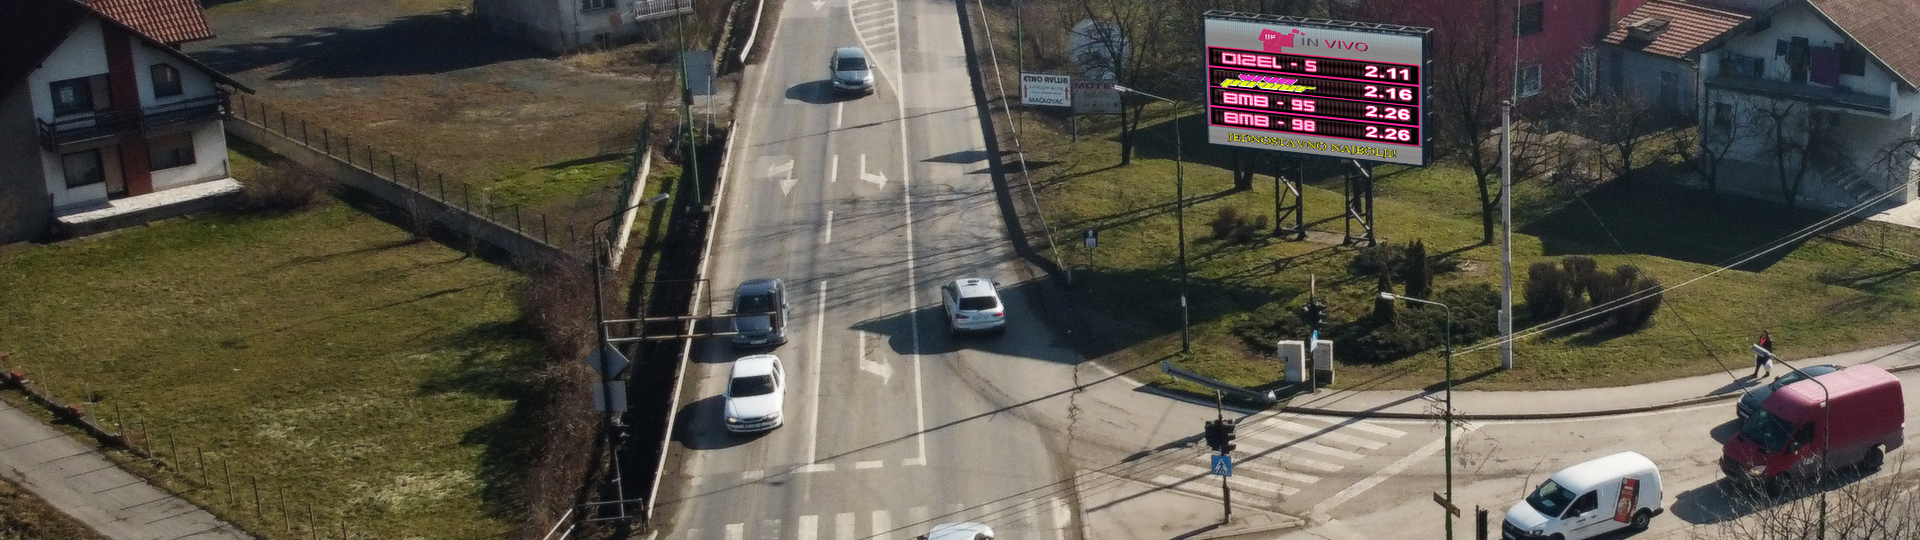 Glavna semaforska raskrsnica na ulazu u grad Živinice. Izuzetno prometna kako za teretna tako i za putnička vozila. Reklama pristupačne cijene sa garancijom efikasnosti je baš na ovoj lokaciji za Vas.